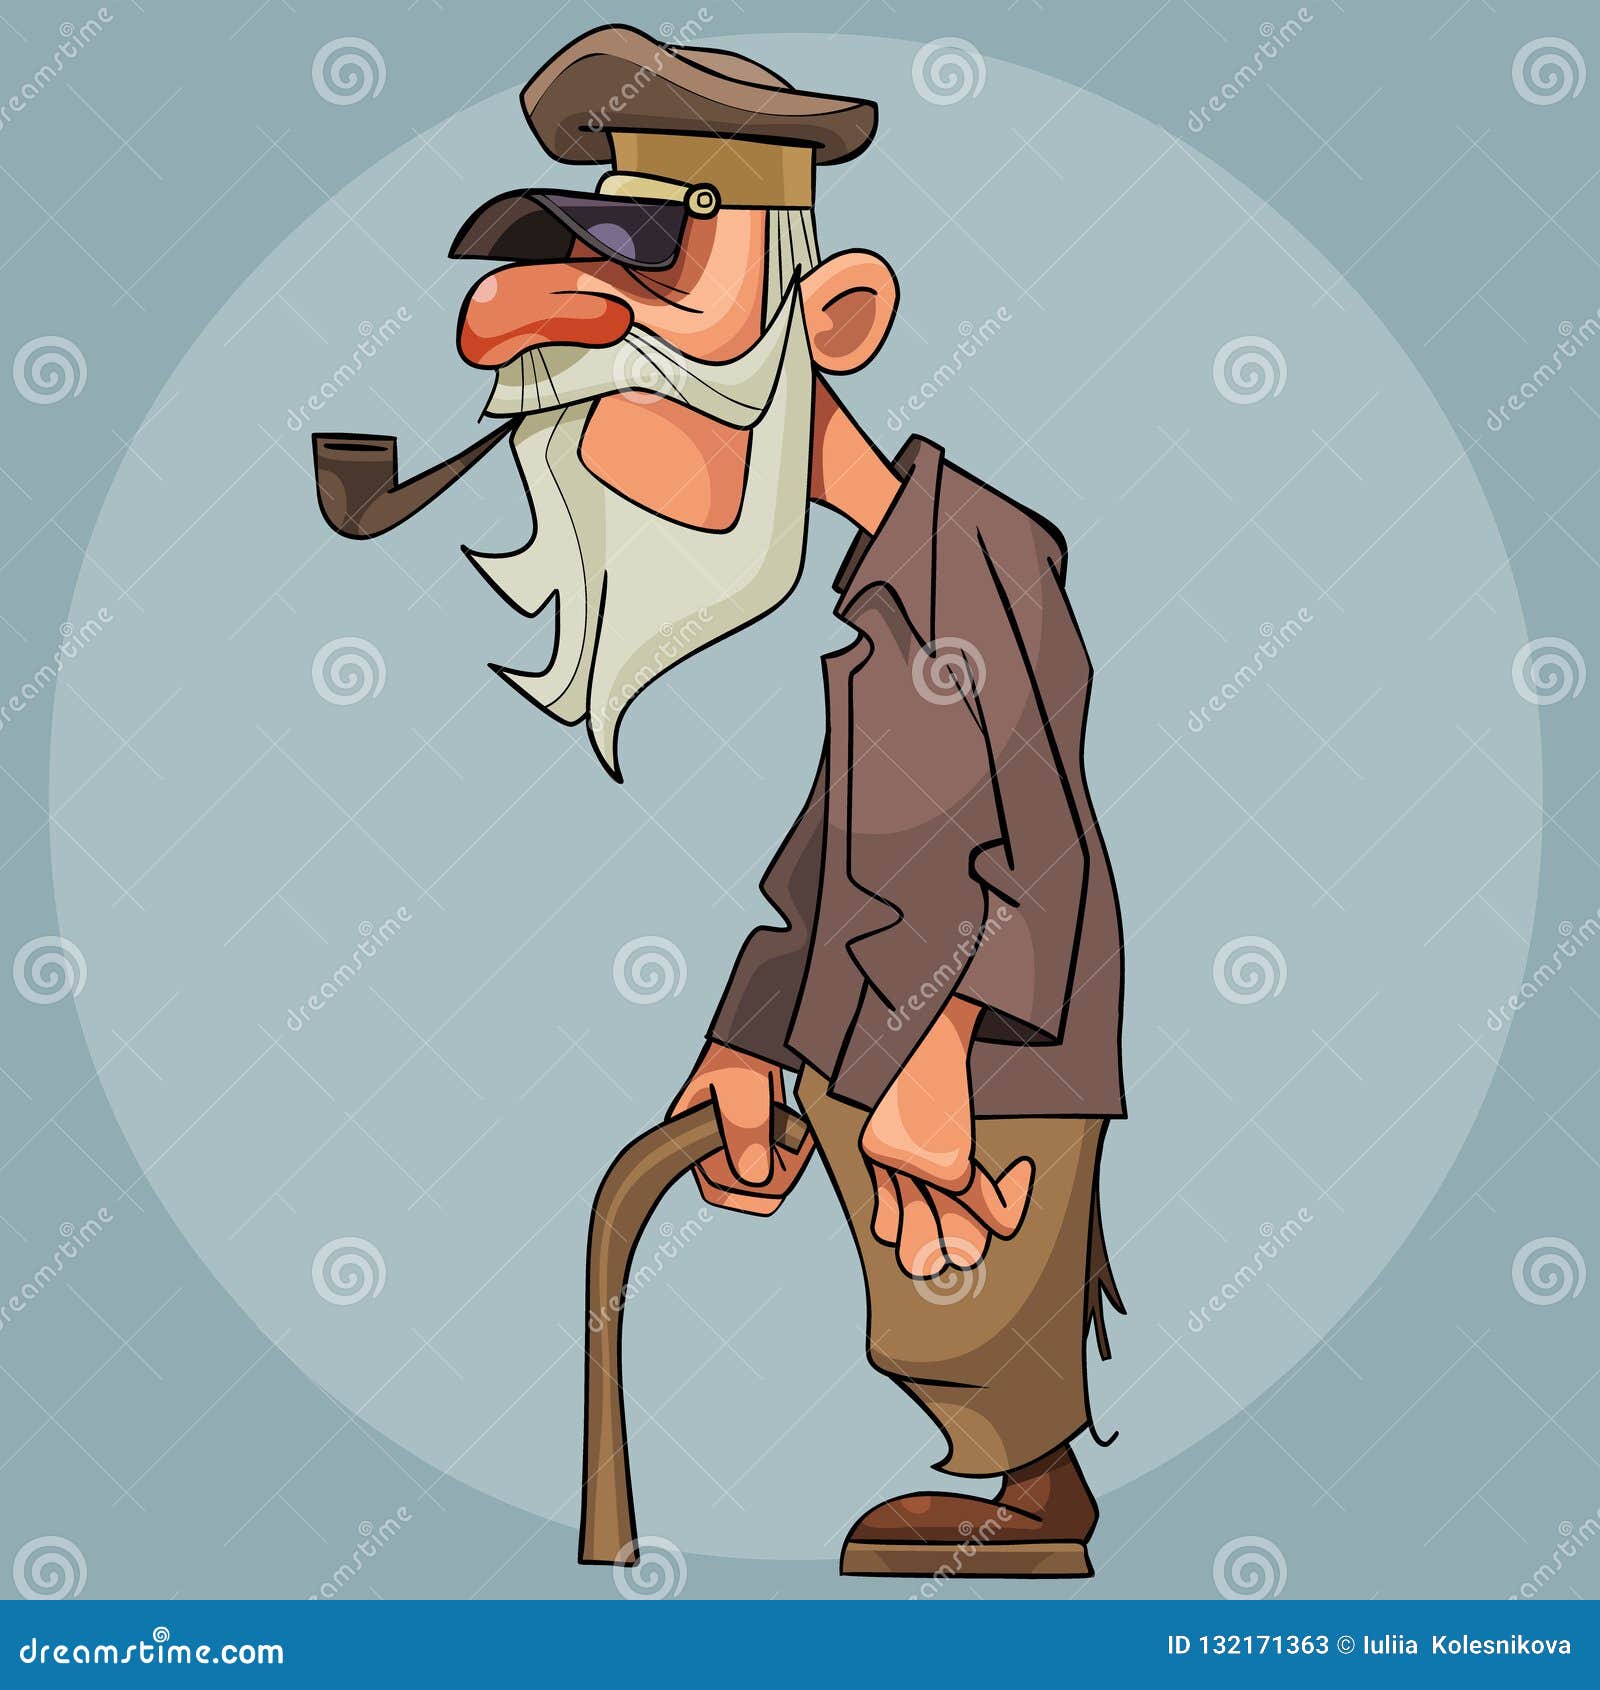 cartoon-old-man-smoking-pipe-leaning-cane-cartoon-old-man-smoking-pipe-leaning-cane-132171363.jpg